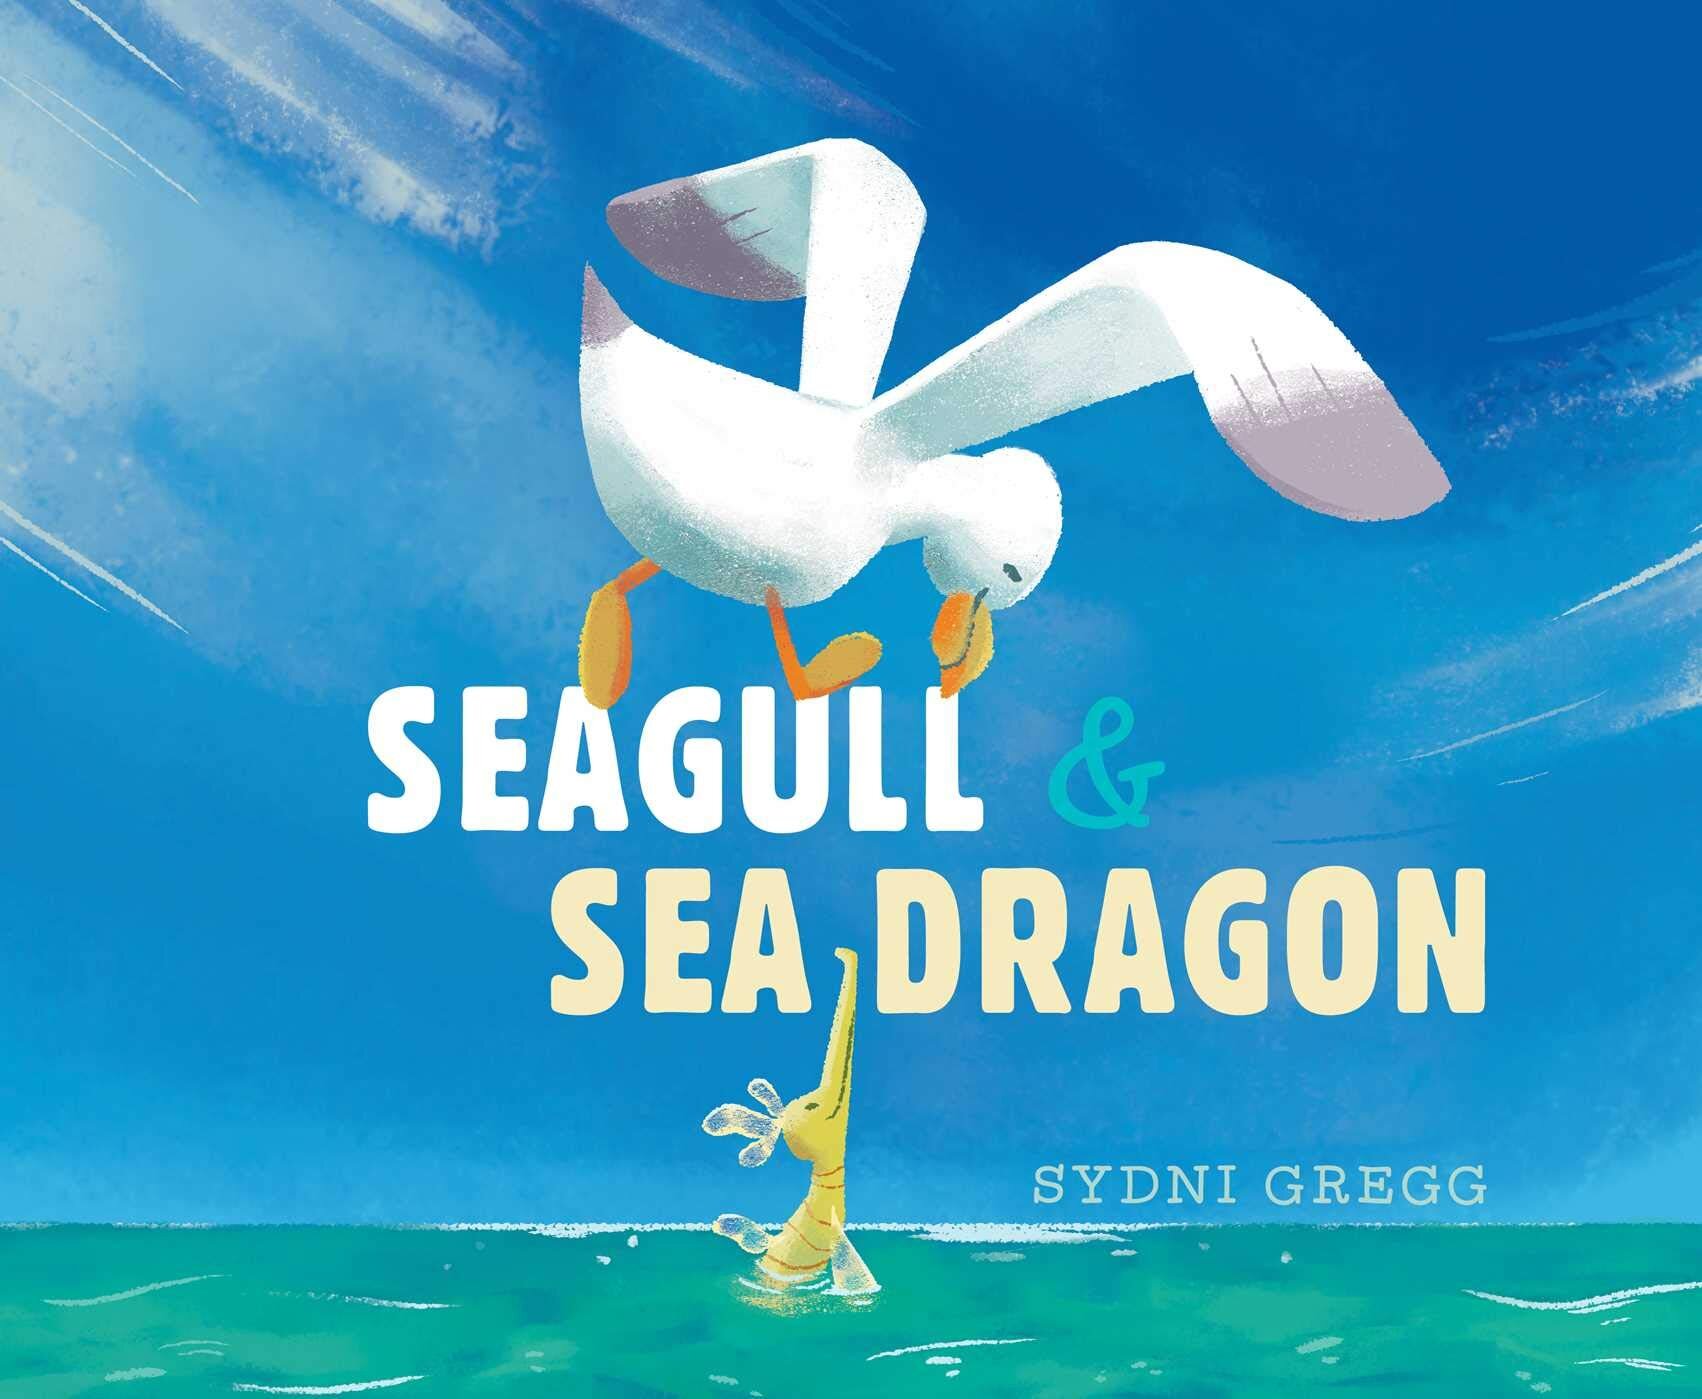 Seagull &amp; Sea Dragon – Sydni Gregg